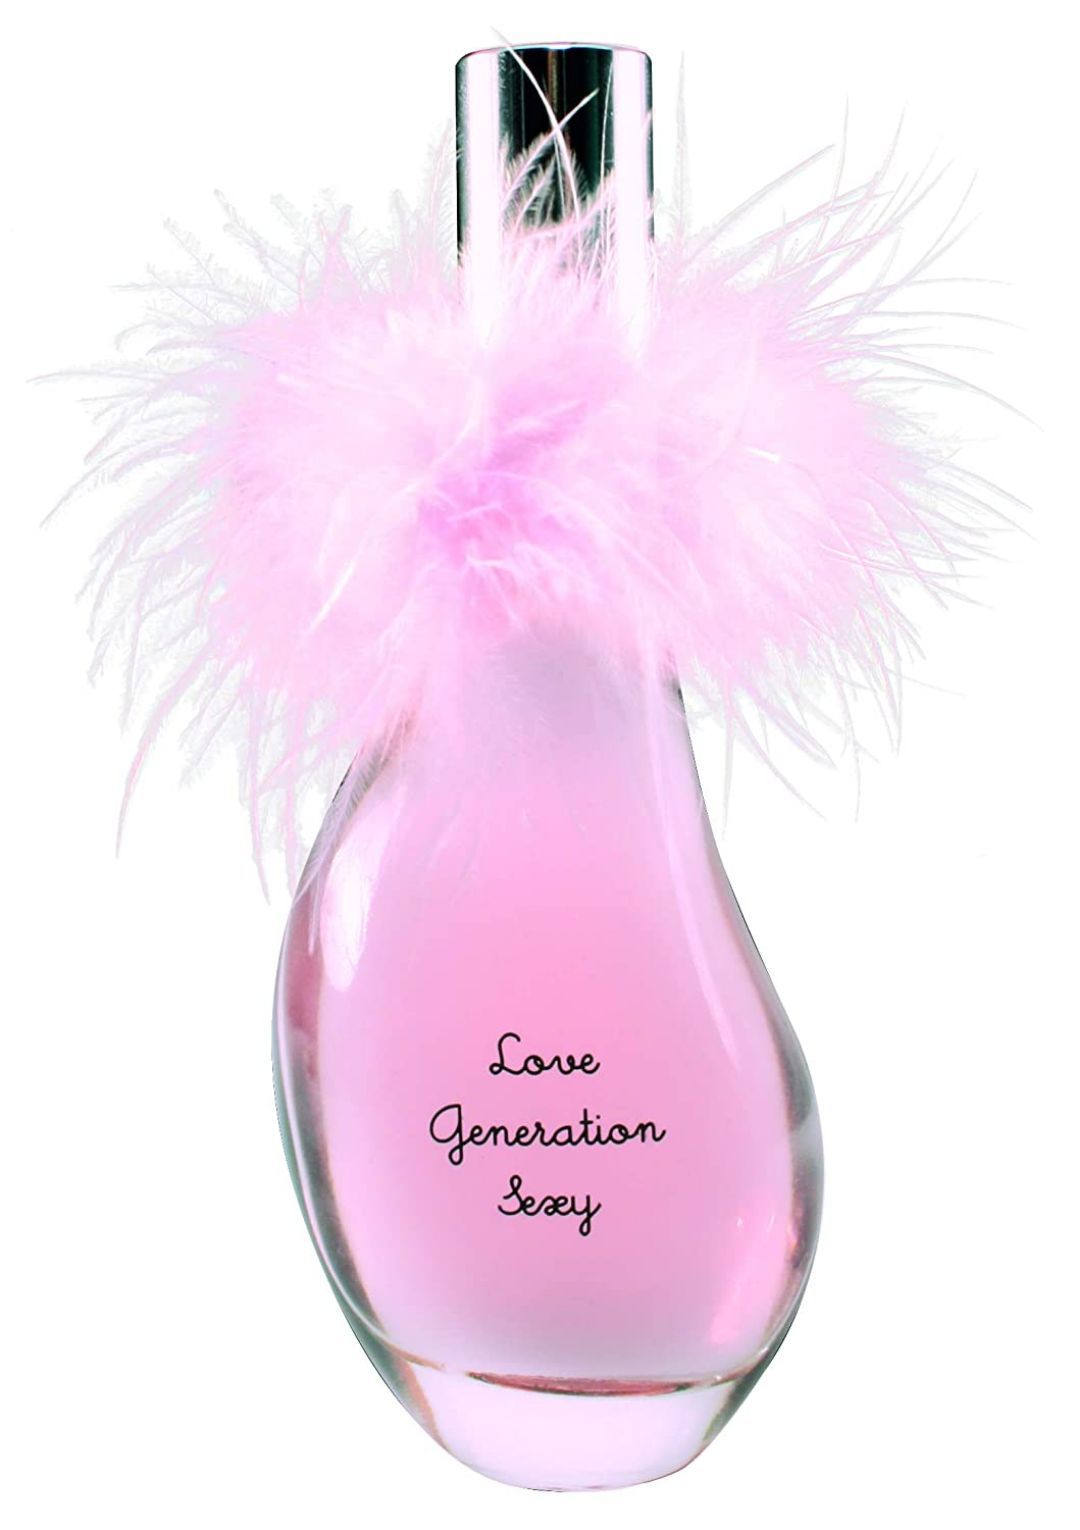 Perfume Jeanne Arthes Love Generation Rock - Eau De Parfum 